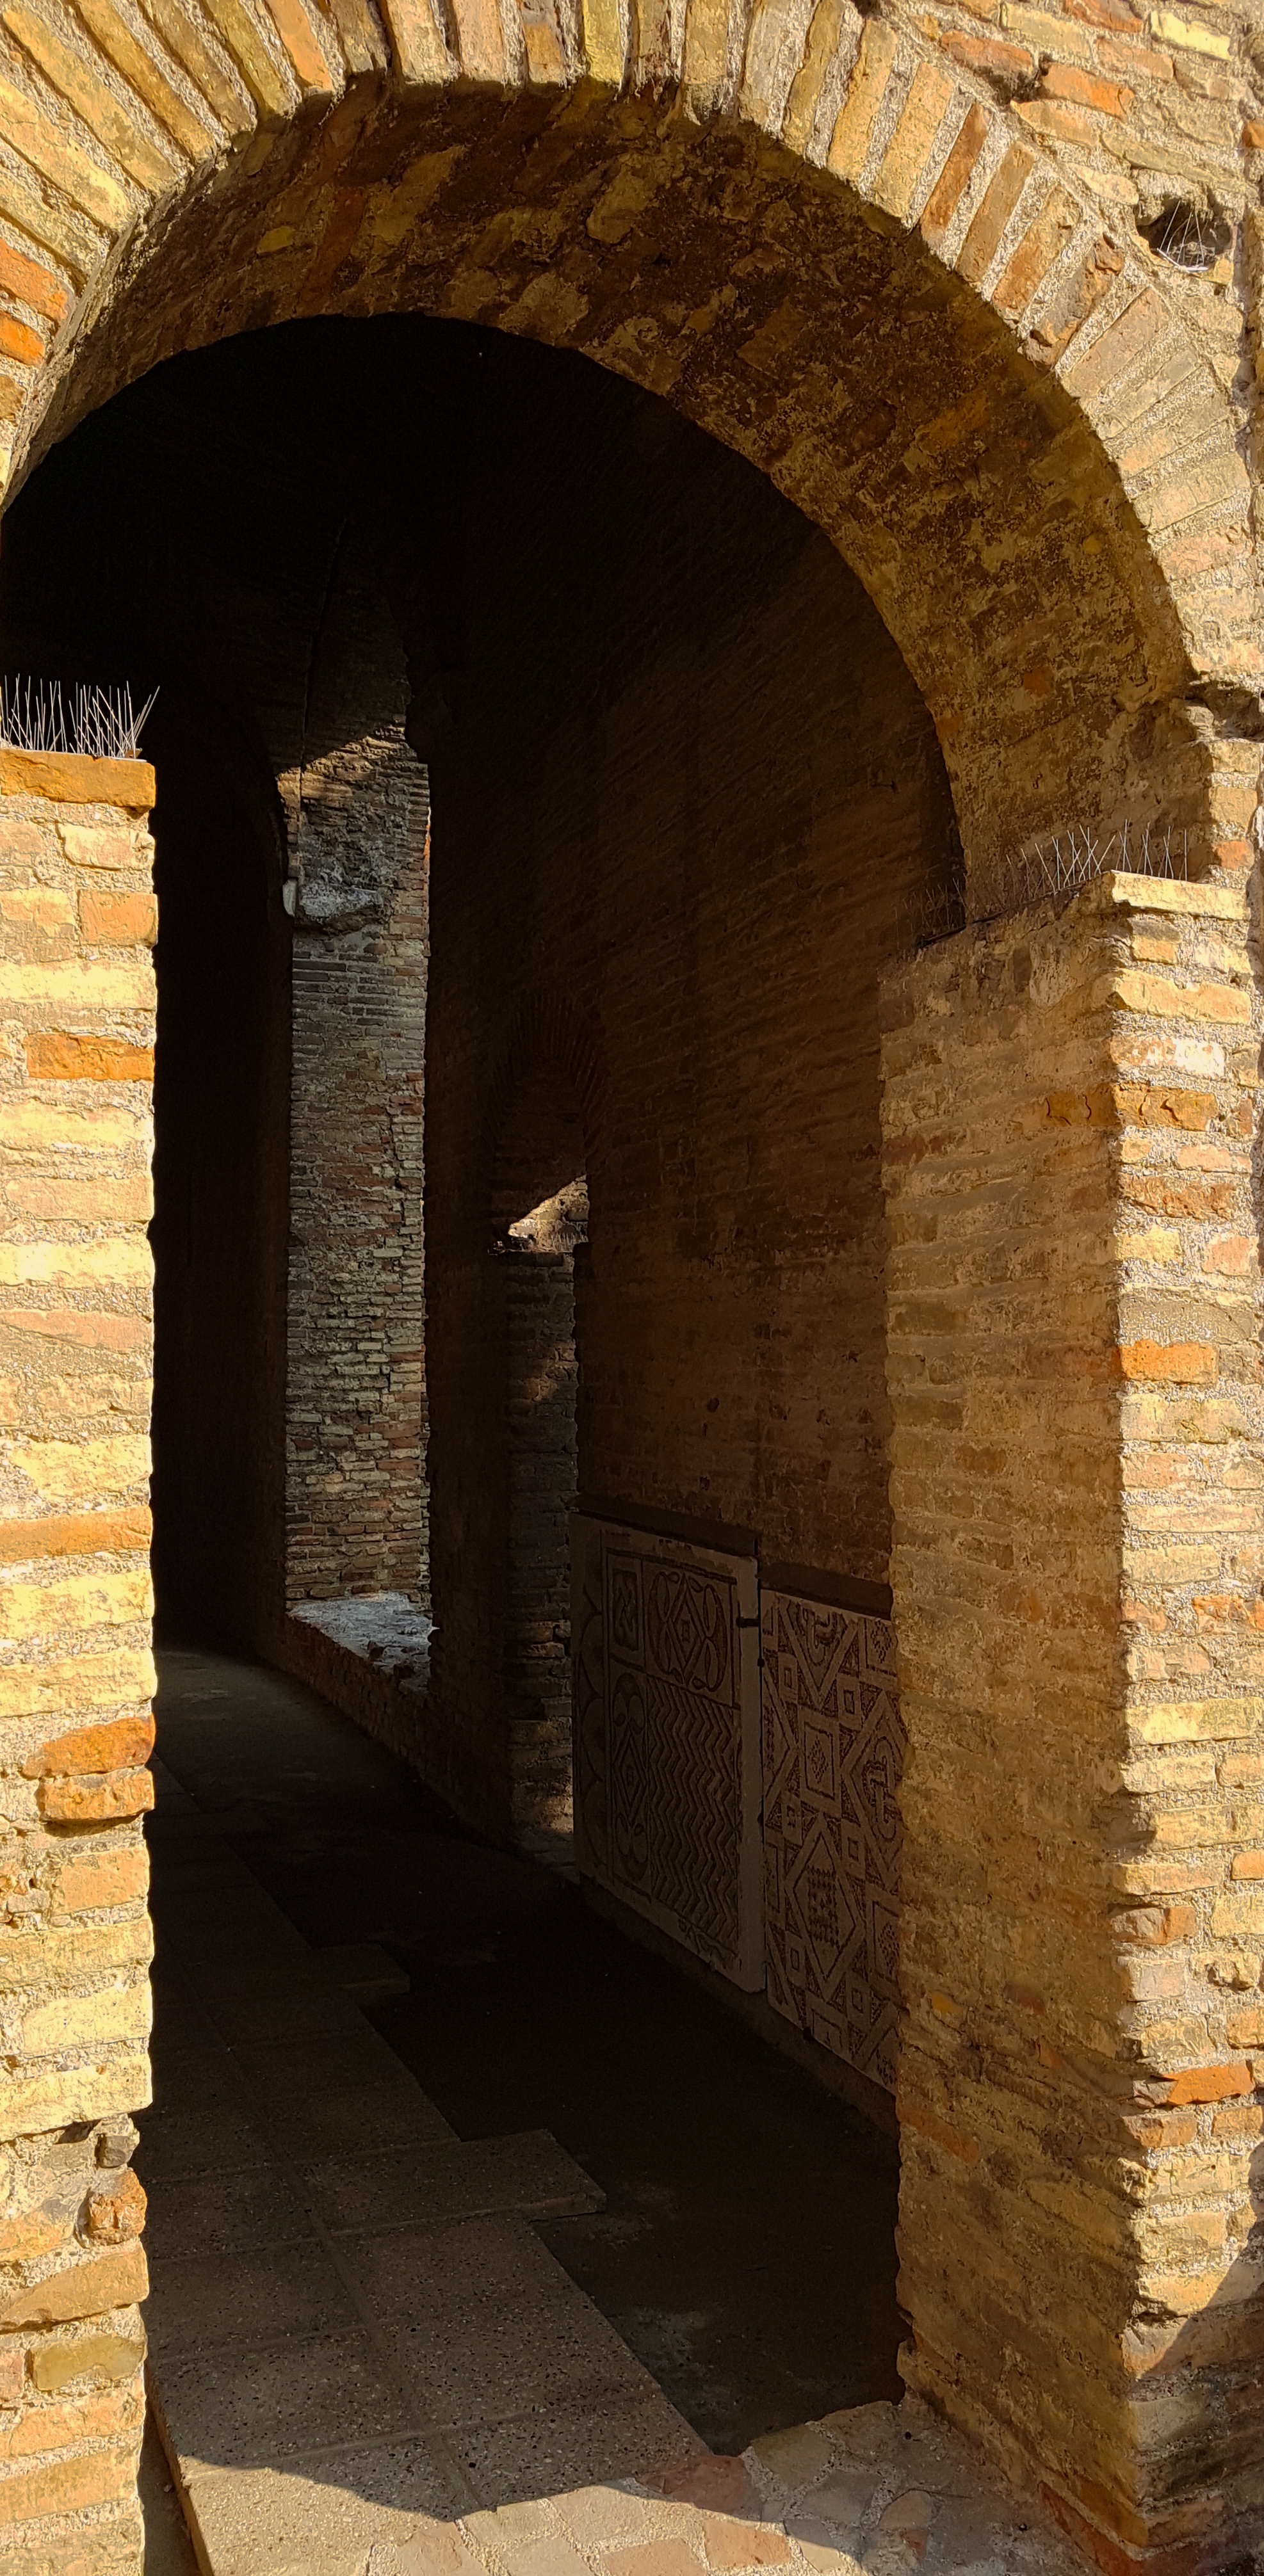 photo: https://upload.wikimedia.org/wikipedia/commons/e/e2/Chiesa_di_San_Salvatore_ad_Chalchis_cosiddetto_Palazzo_di_Teodorico_mosaici_in_vista.jpg